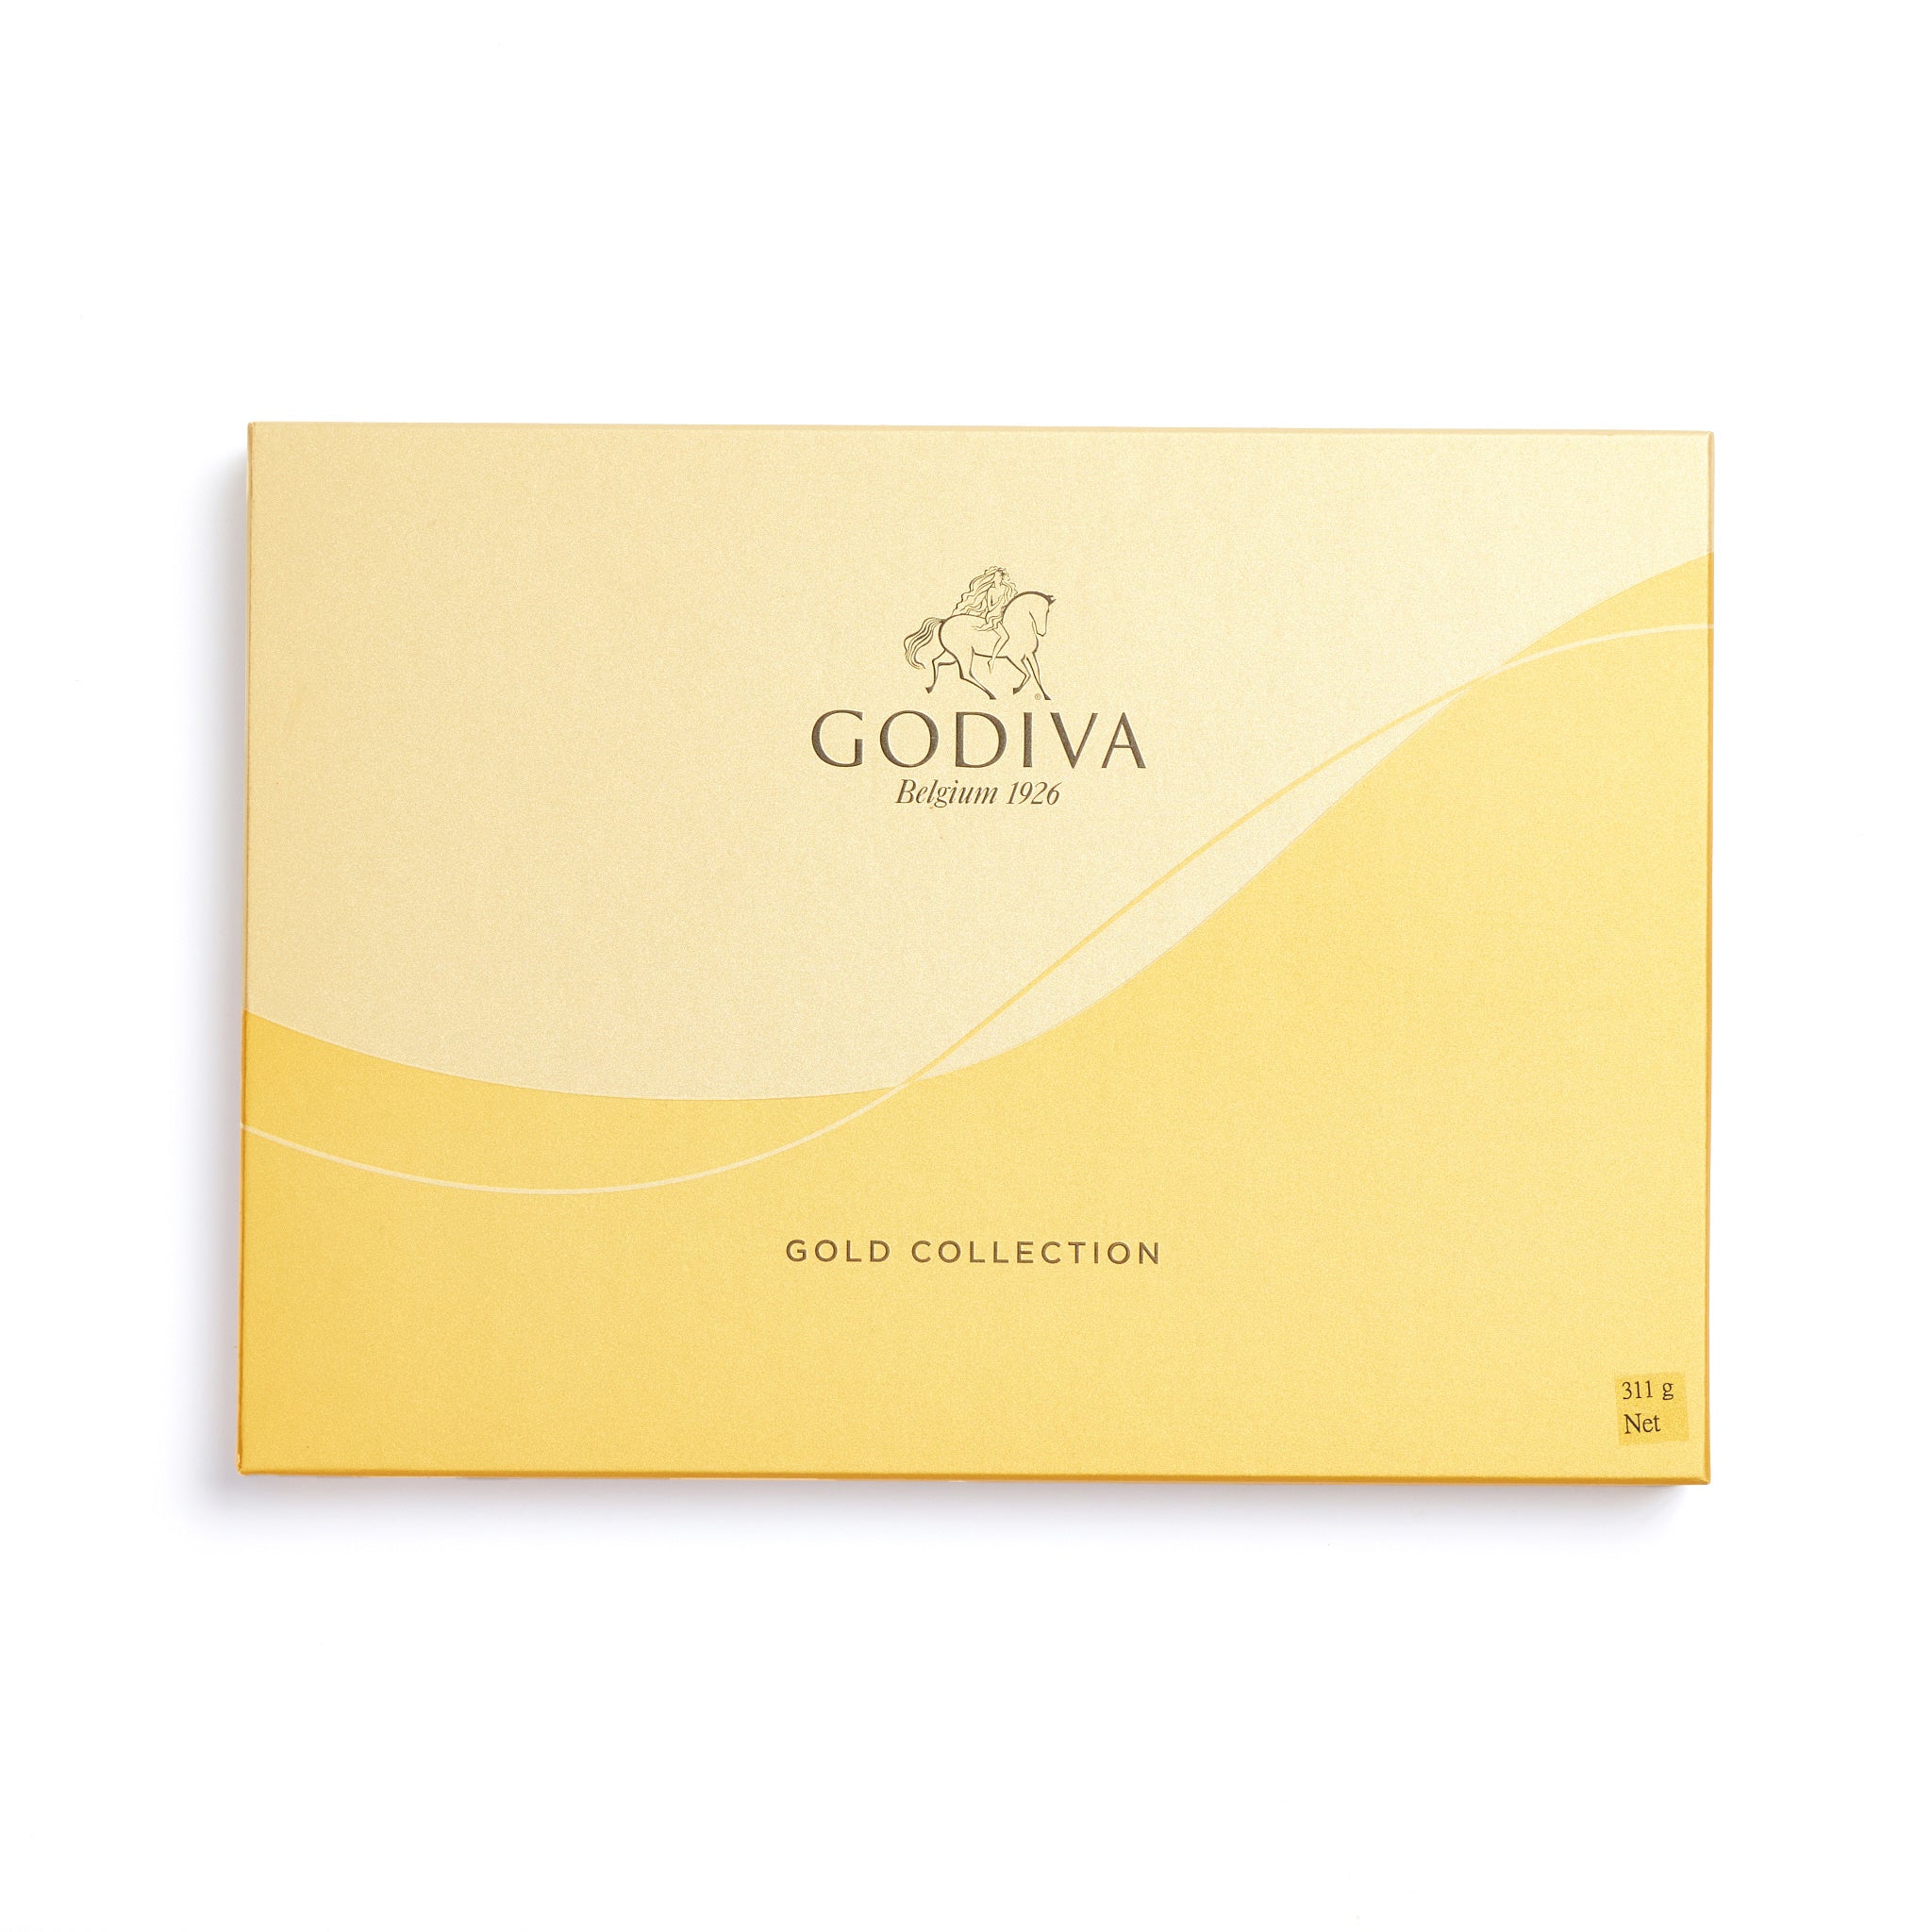 gold-collection-chocolate-gift-box-35pc-2_5ed6b0fd-b454-43e1-b8b8-9b1e535d77c0.jpg